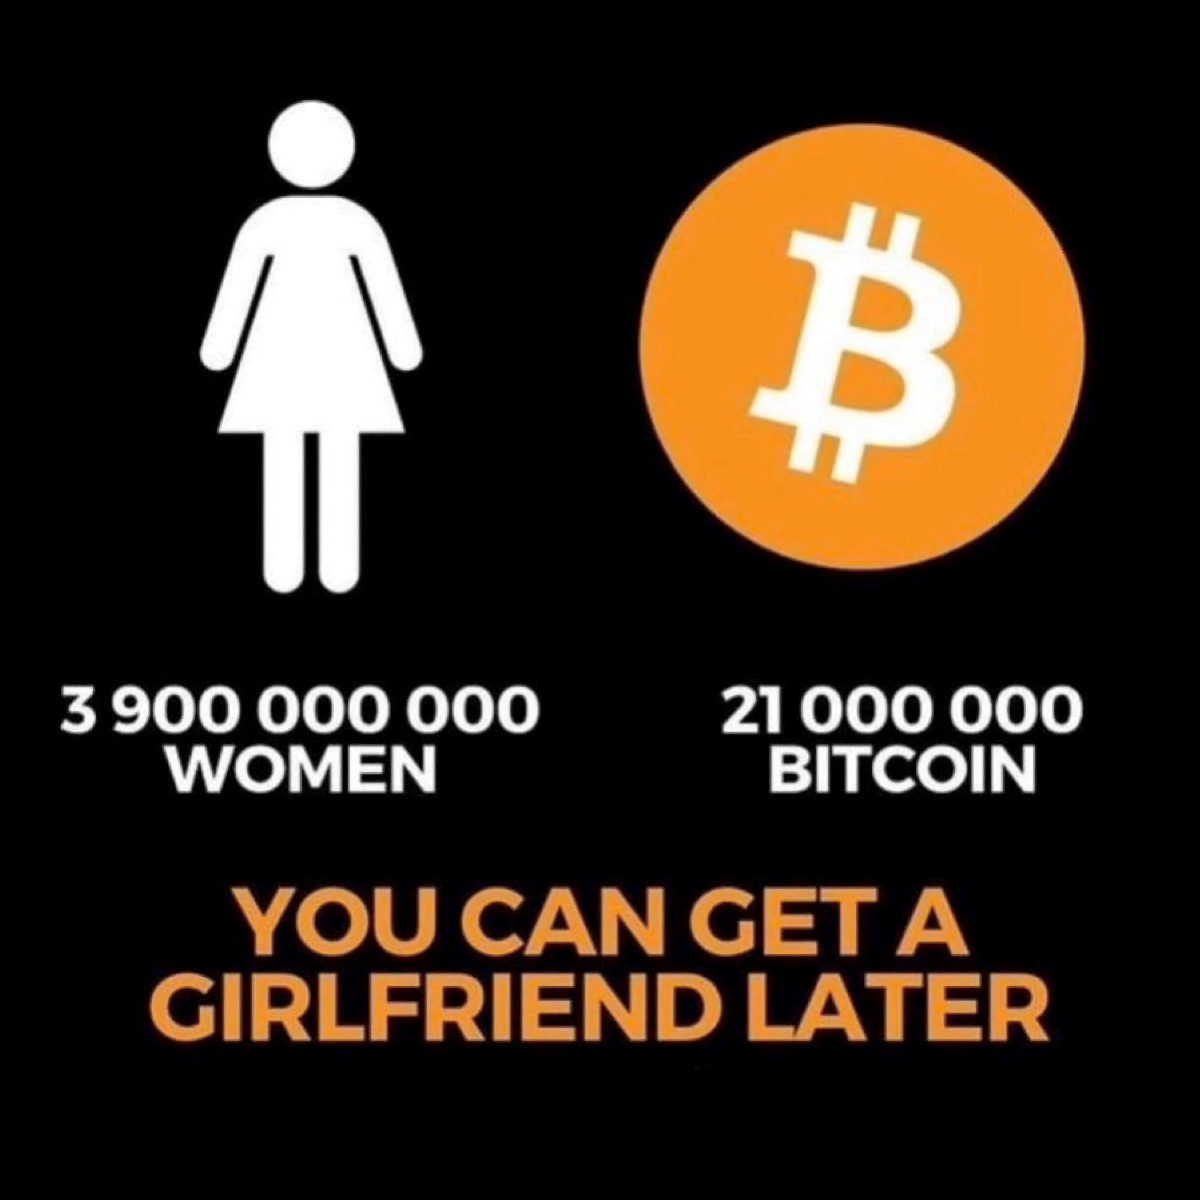 meme-bitcoin-vs-girlfriend-1.jpg